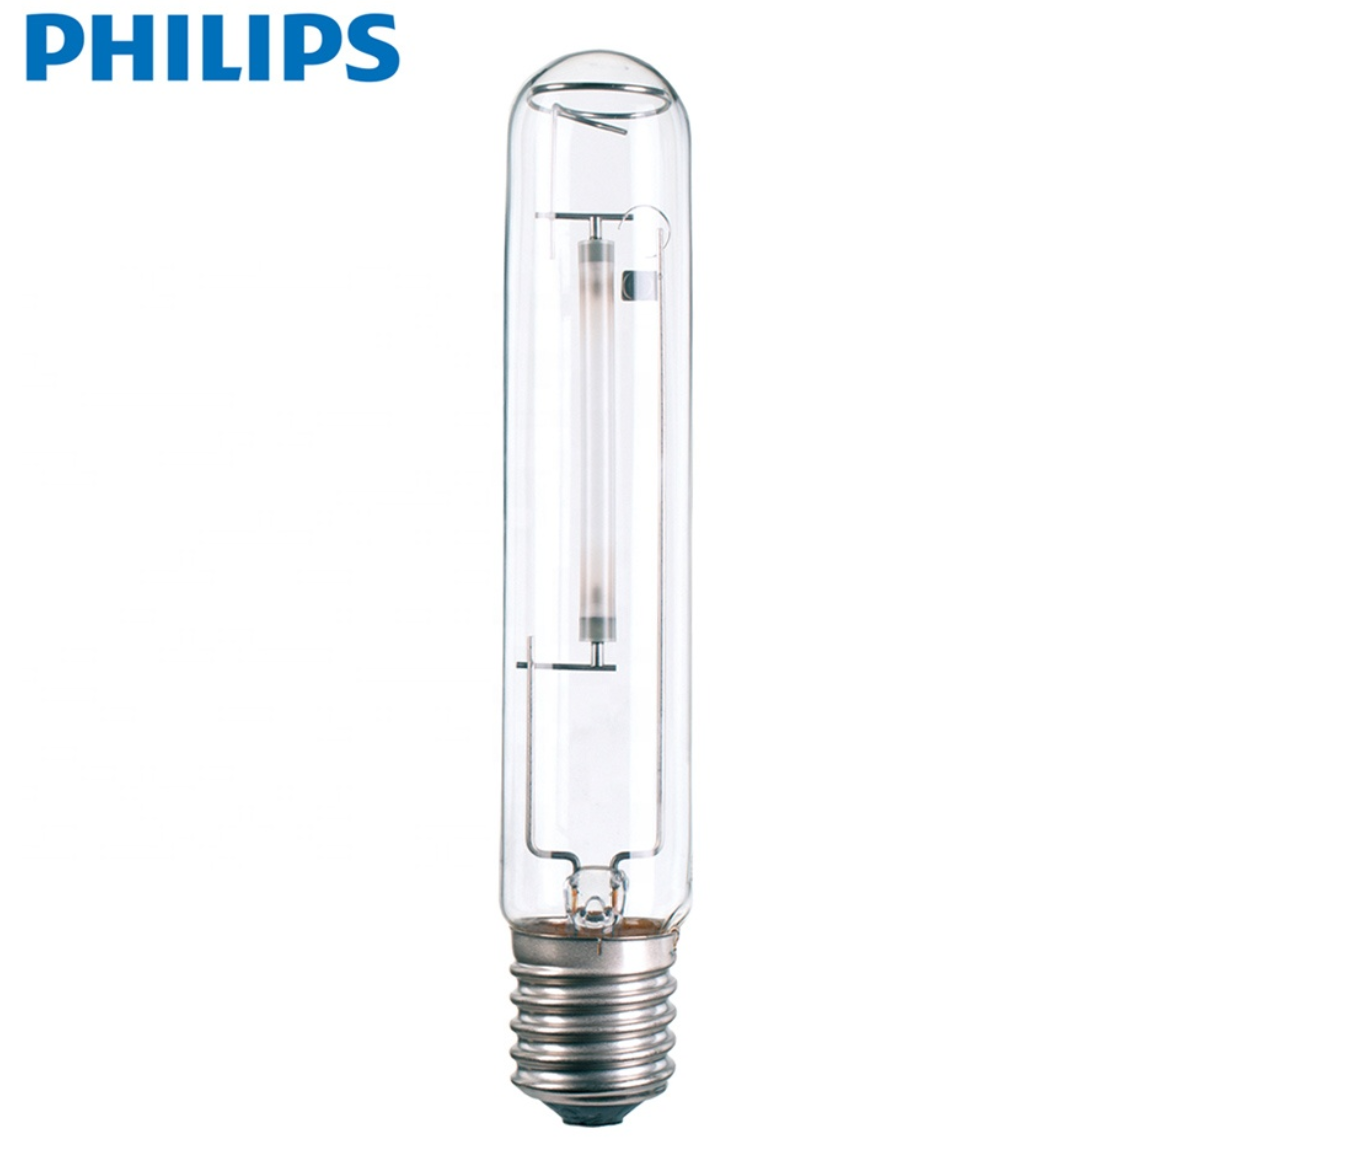 grow Philips MASTER SON-T PIA PLUS 250 W à vapeur de sodium Lampe Floraison Ampoules 